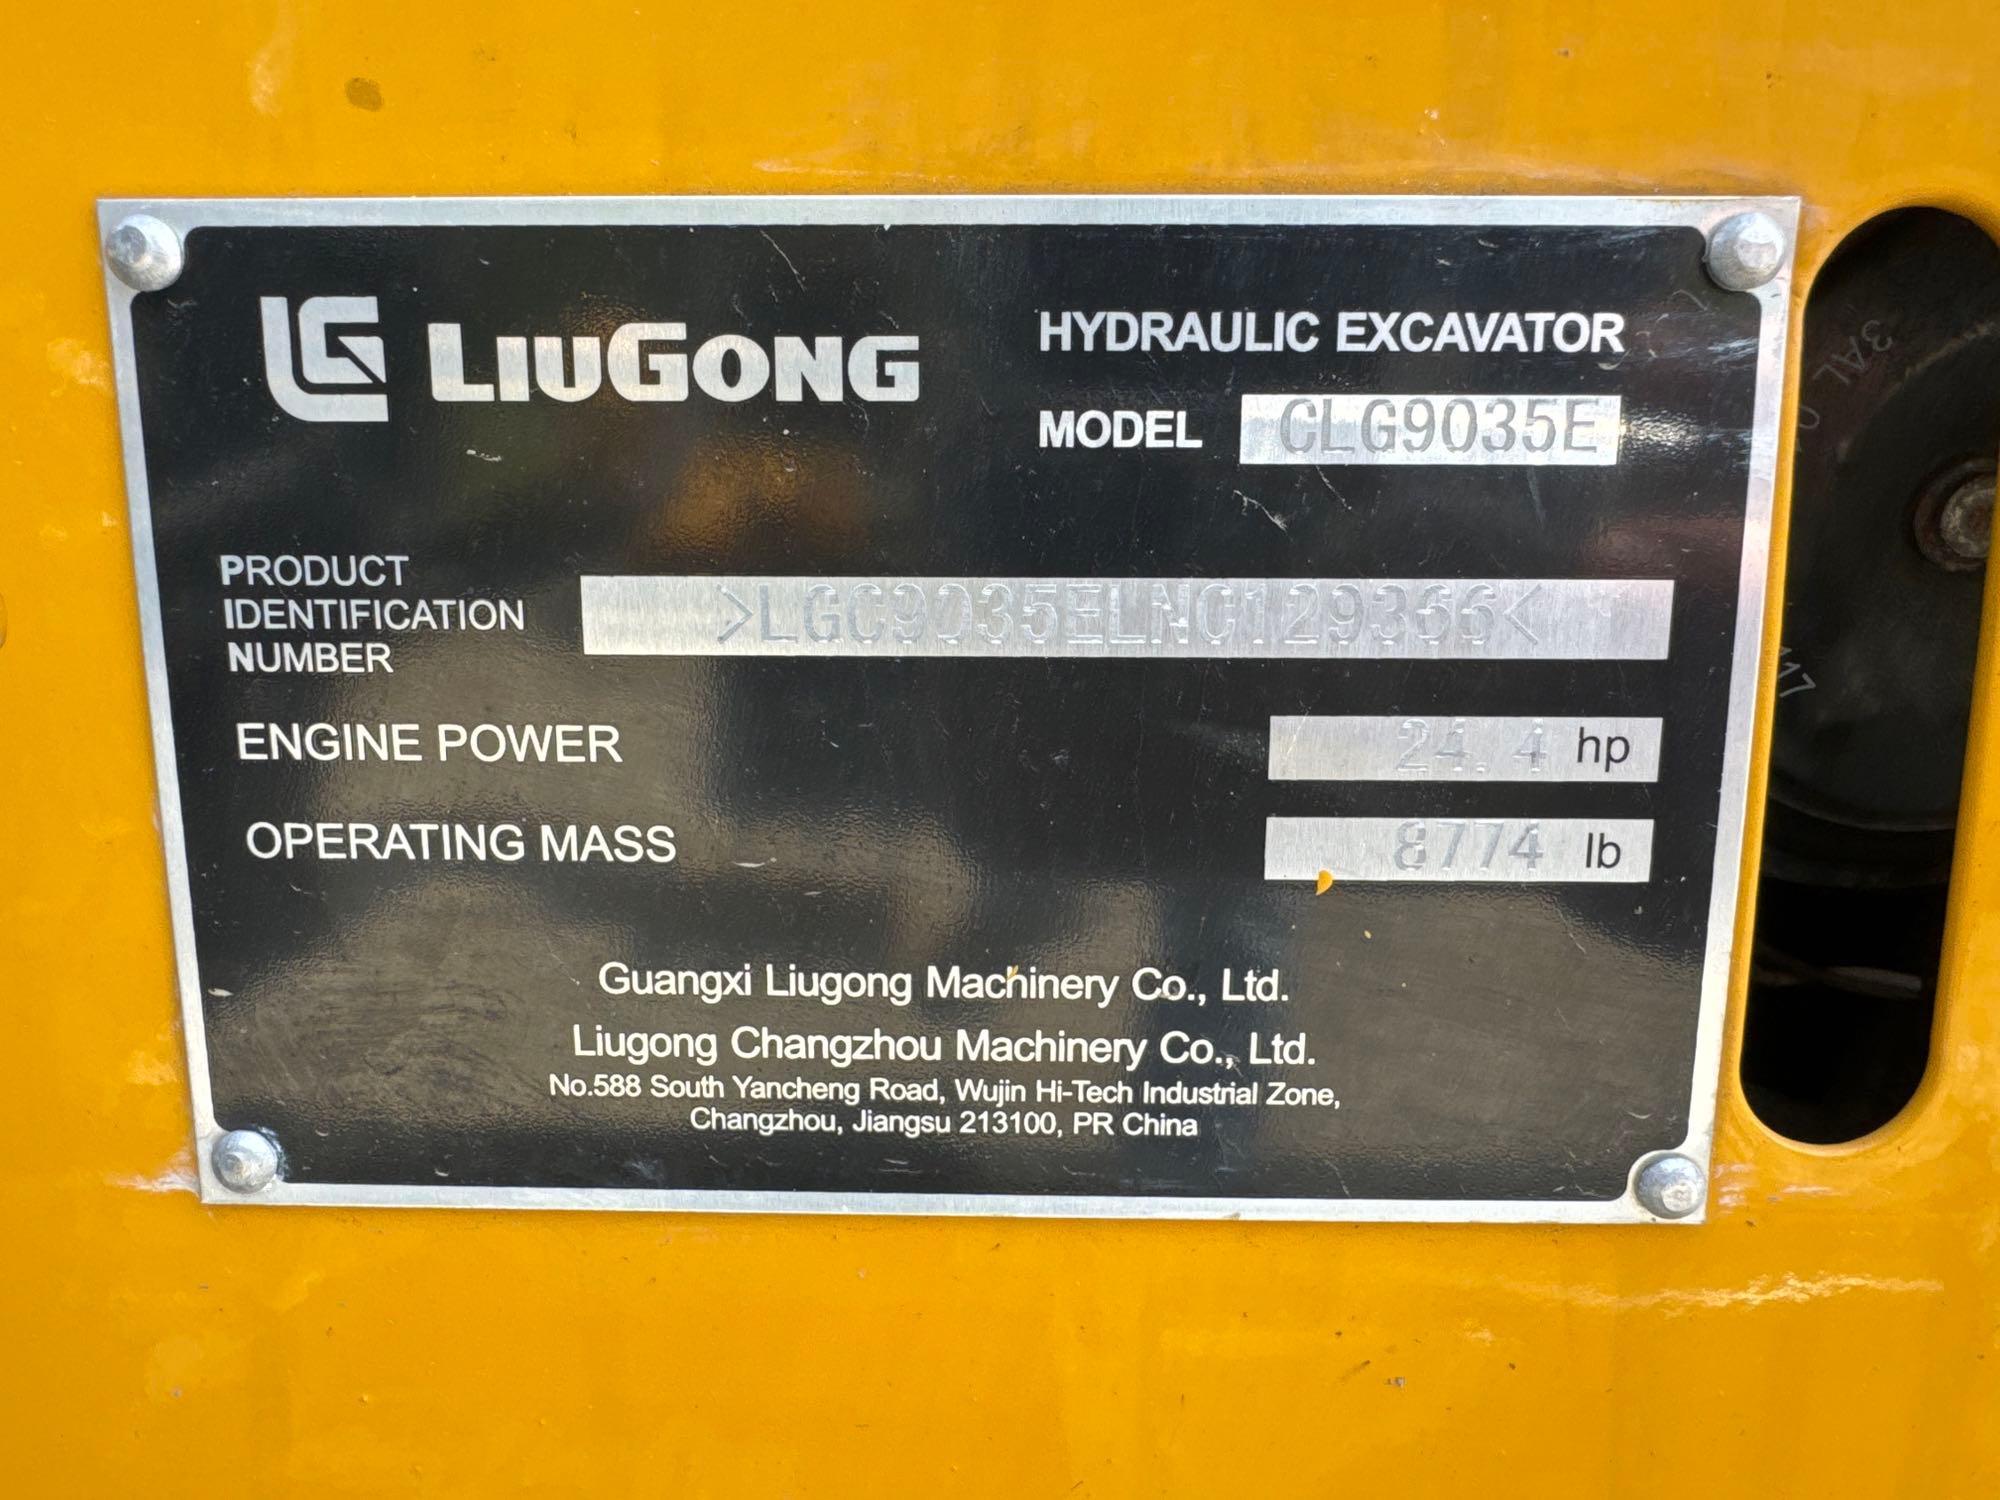 NEW UNUSED LIUGONG 9035E HYDRAULIC EXCAVATOR SN-129366, powered by Yanmar diesel engine, 25hp,